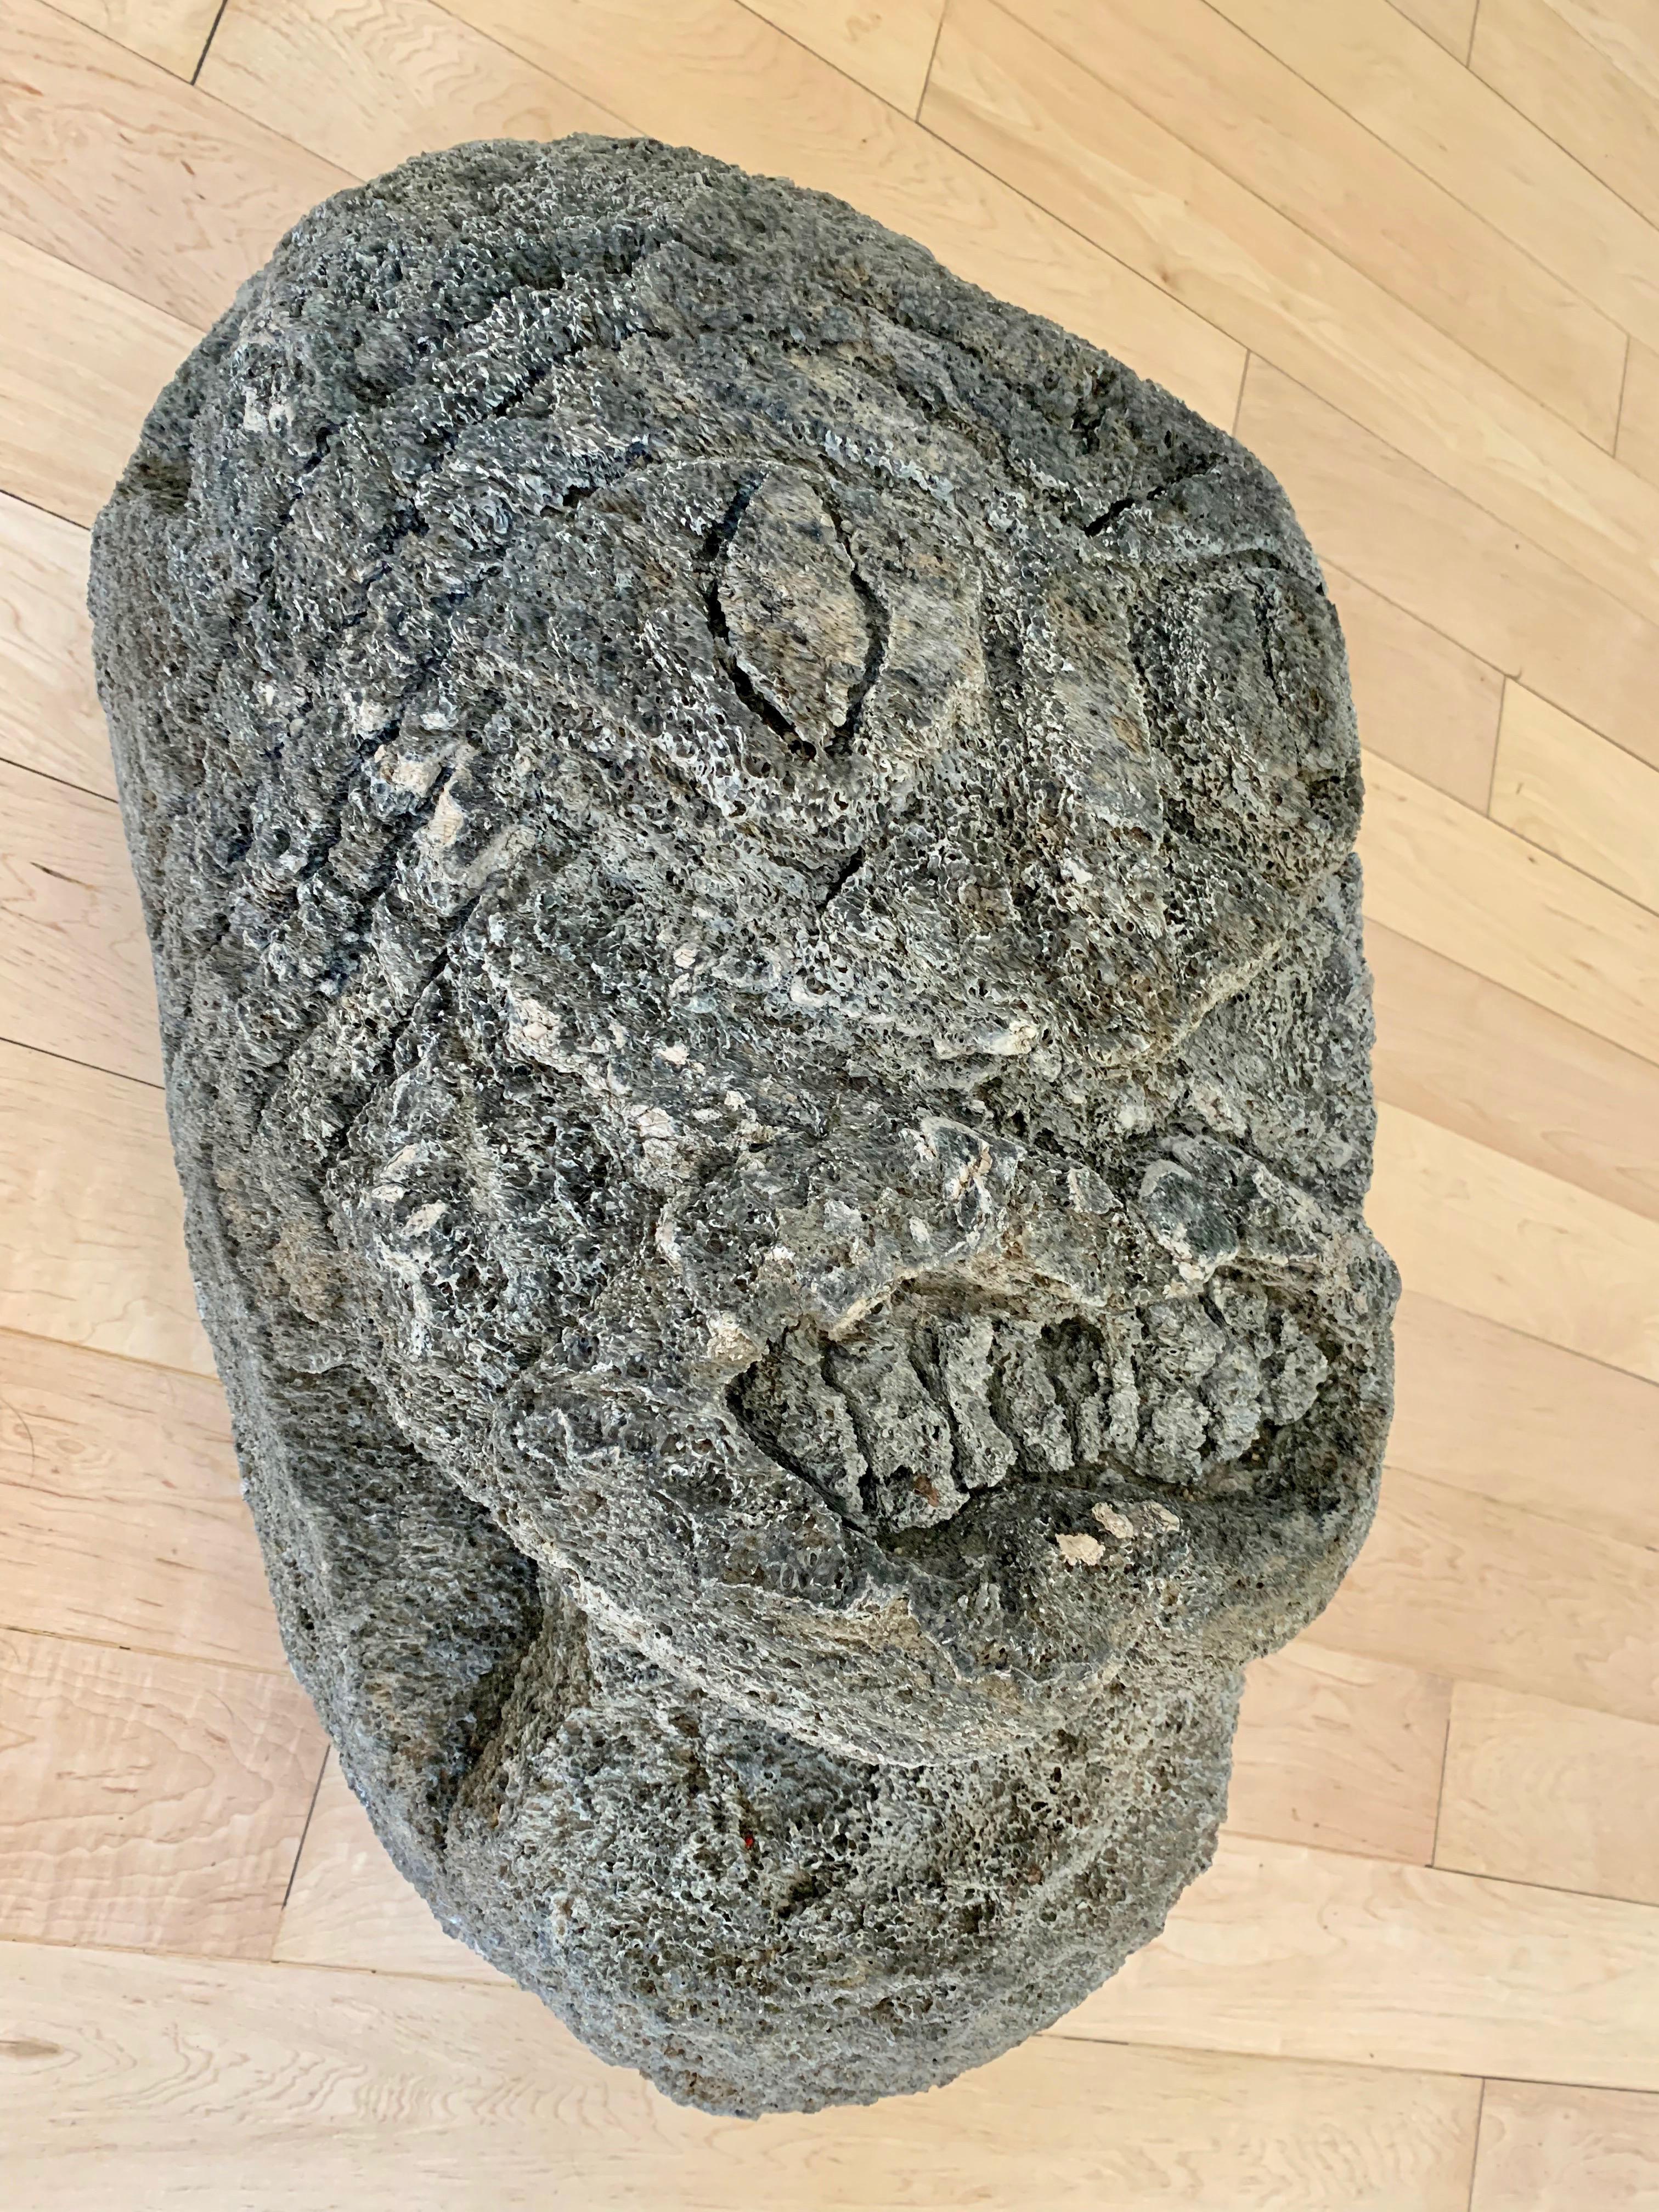 American Lava Rock Face Sculpture